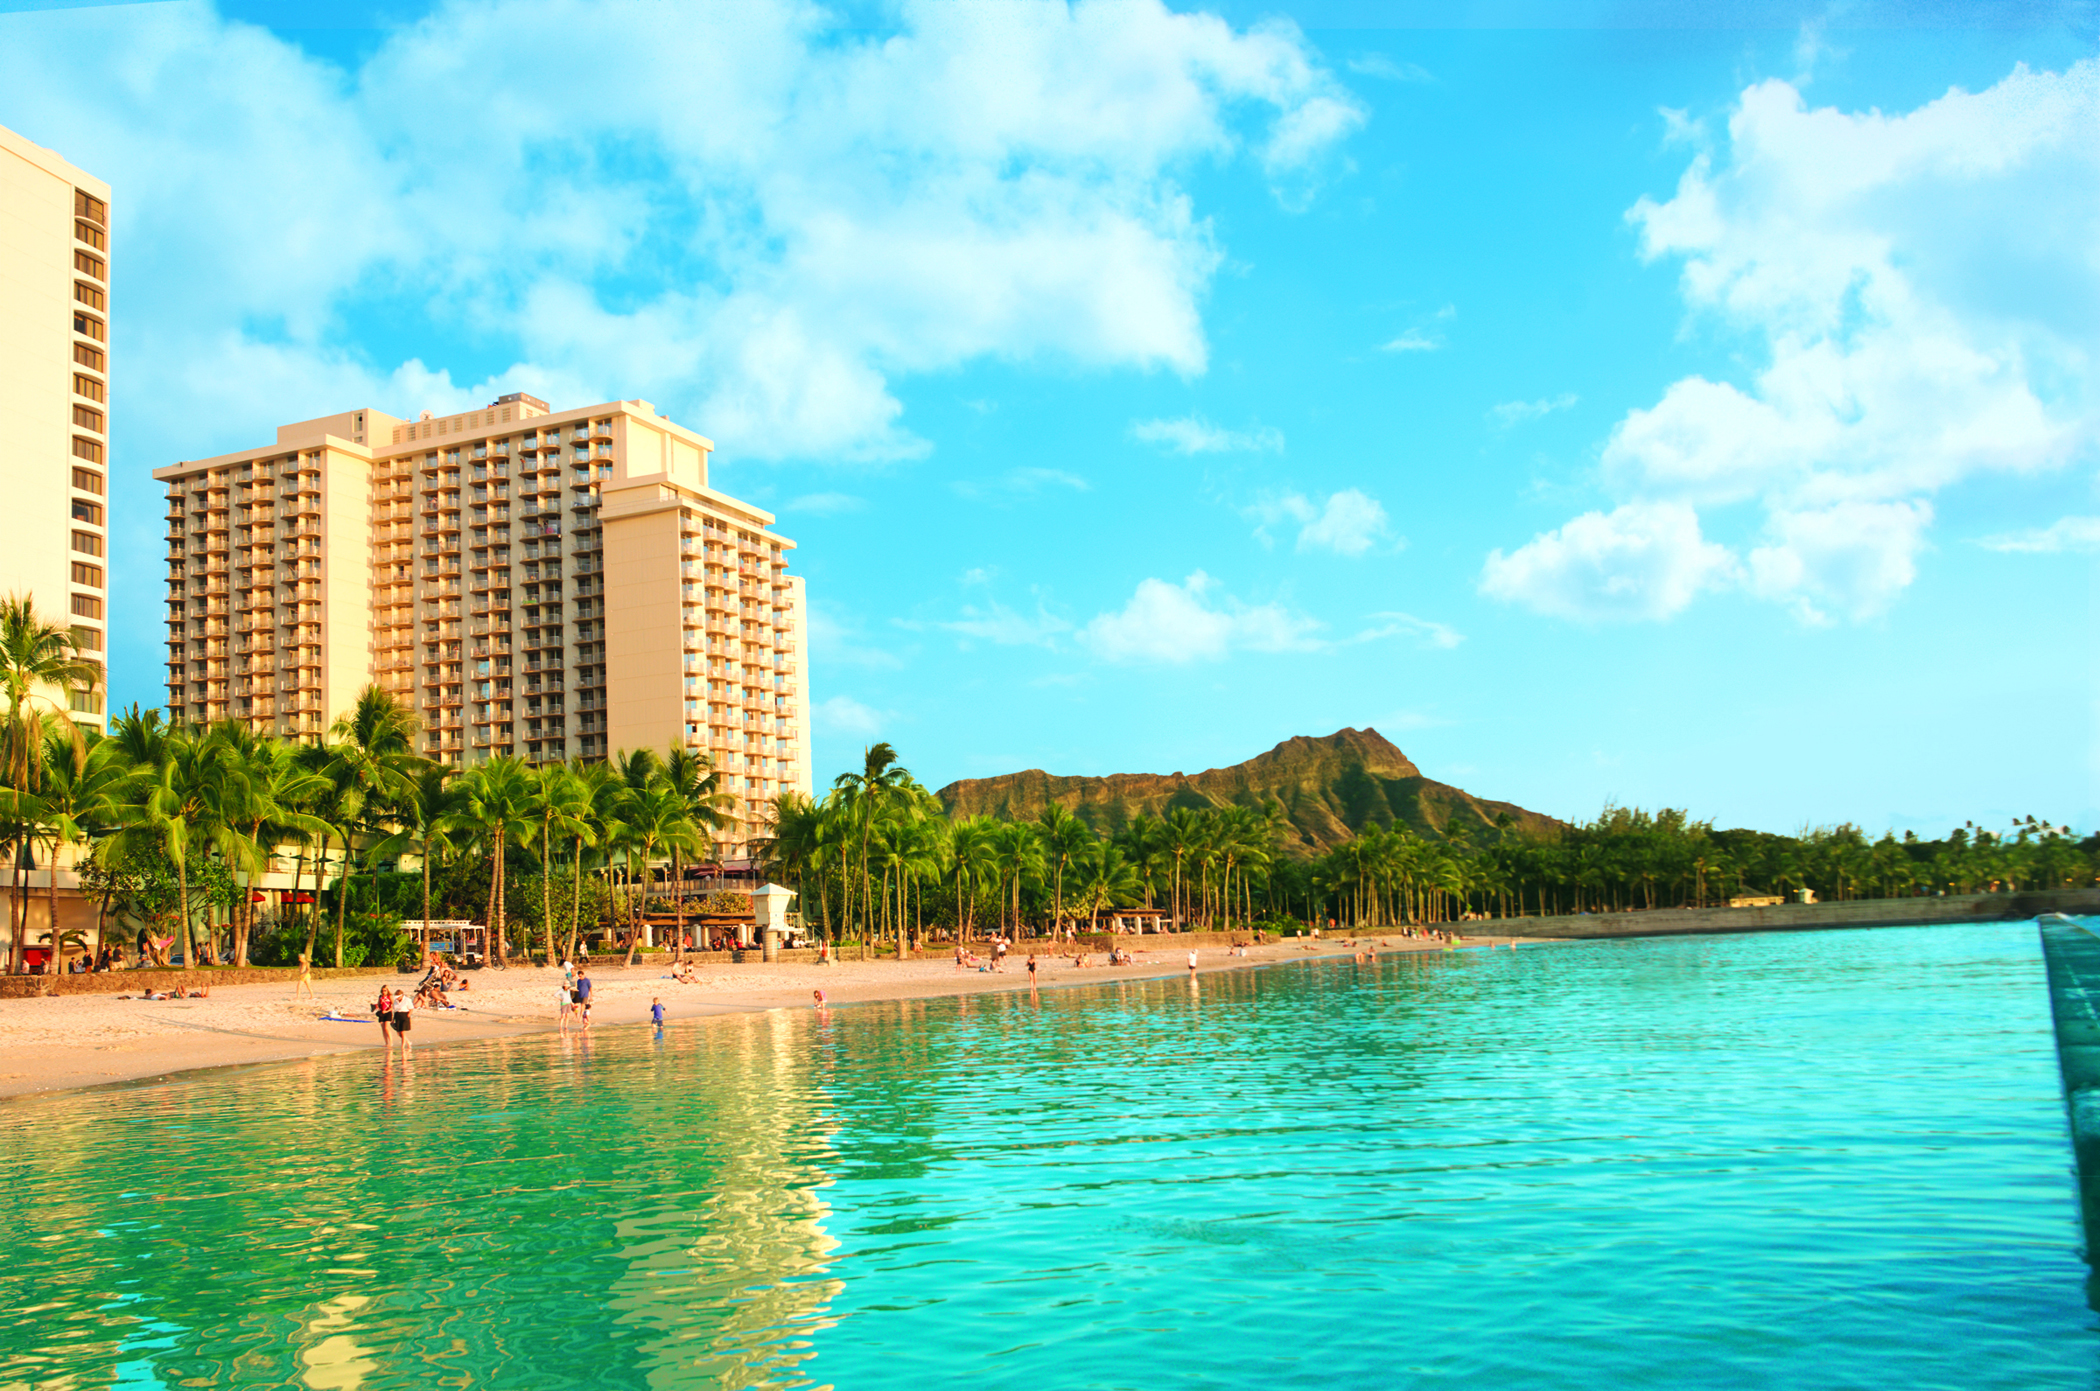 View of the Aston Waikiki Beach Hotel and Waikiki Beach